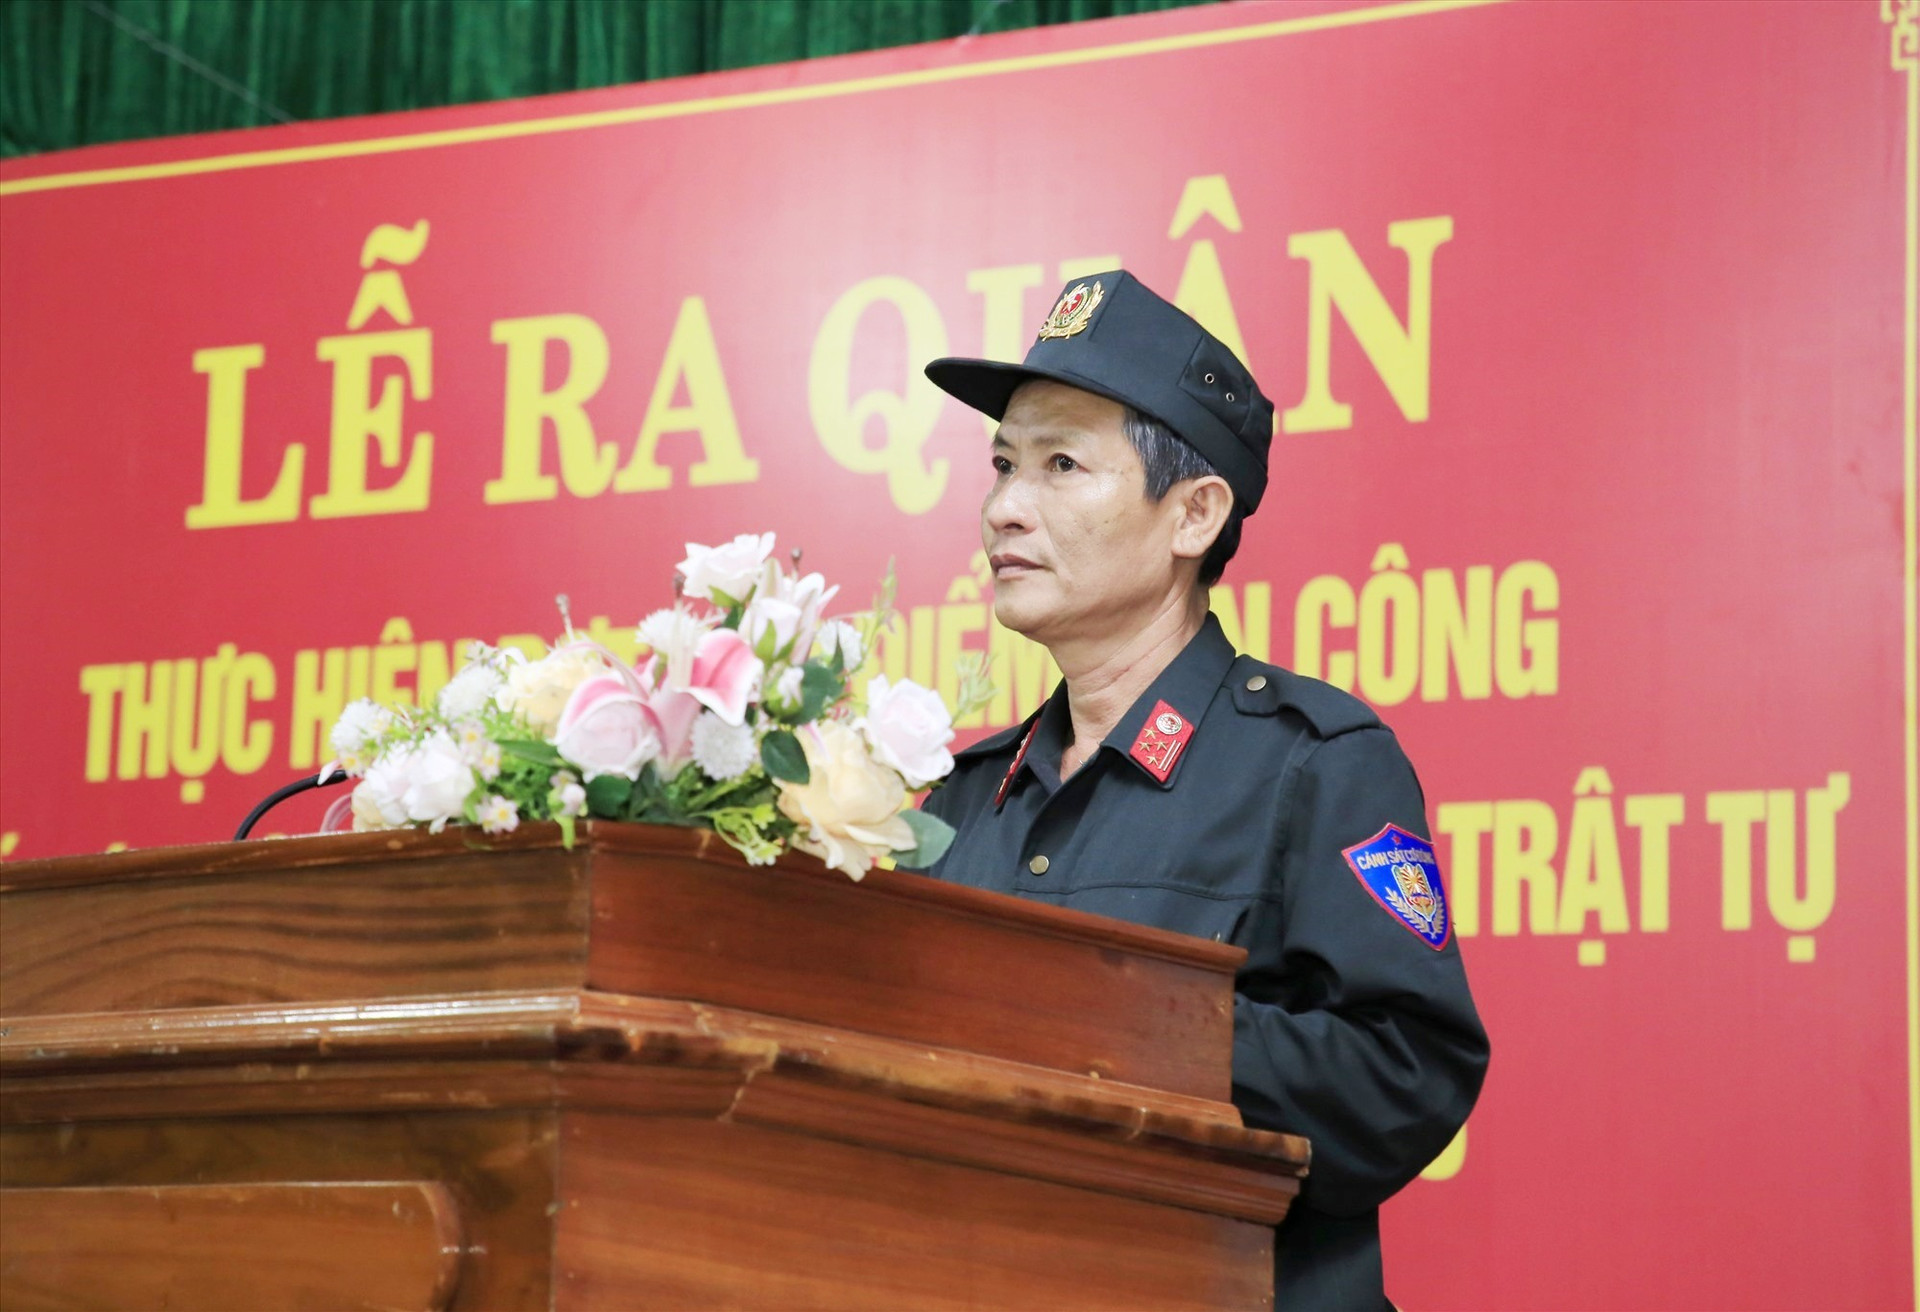 Đại tá Lê Quang Vịnh - Trưởng Phòng Cảnh sát cơ động phát lệnh ra quân tấn công trấn áp tội phạm